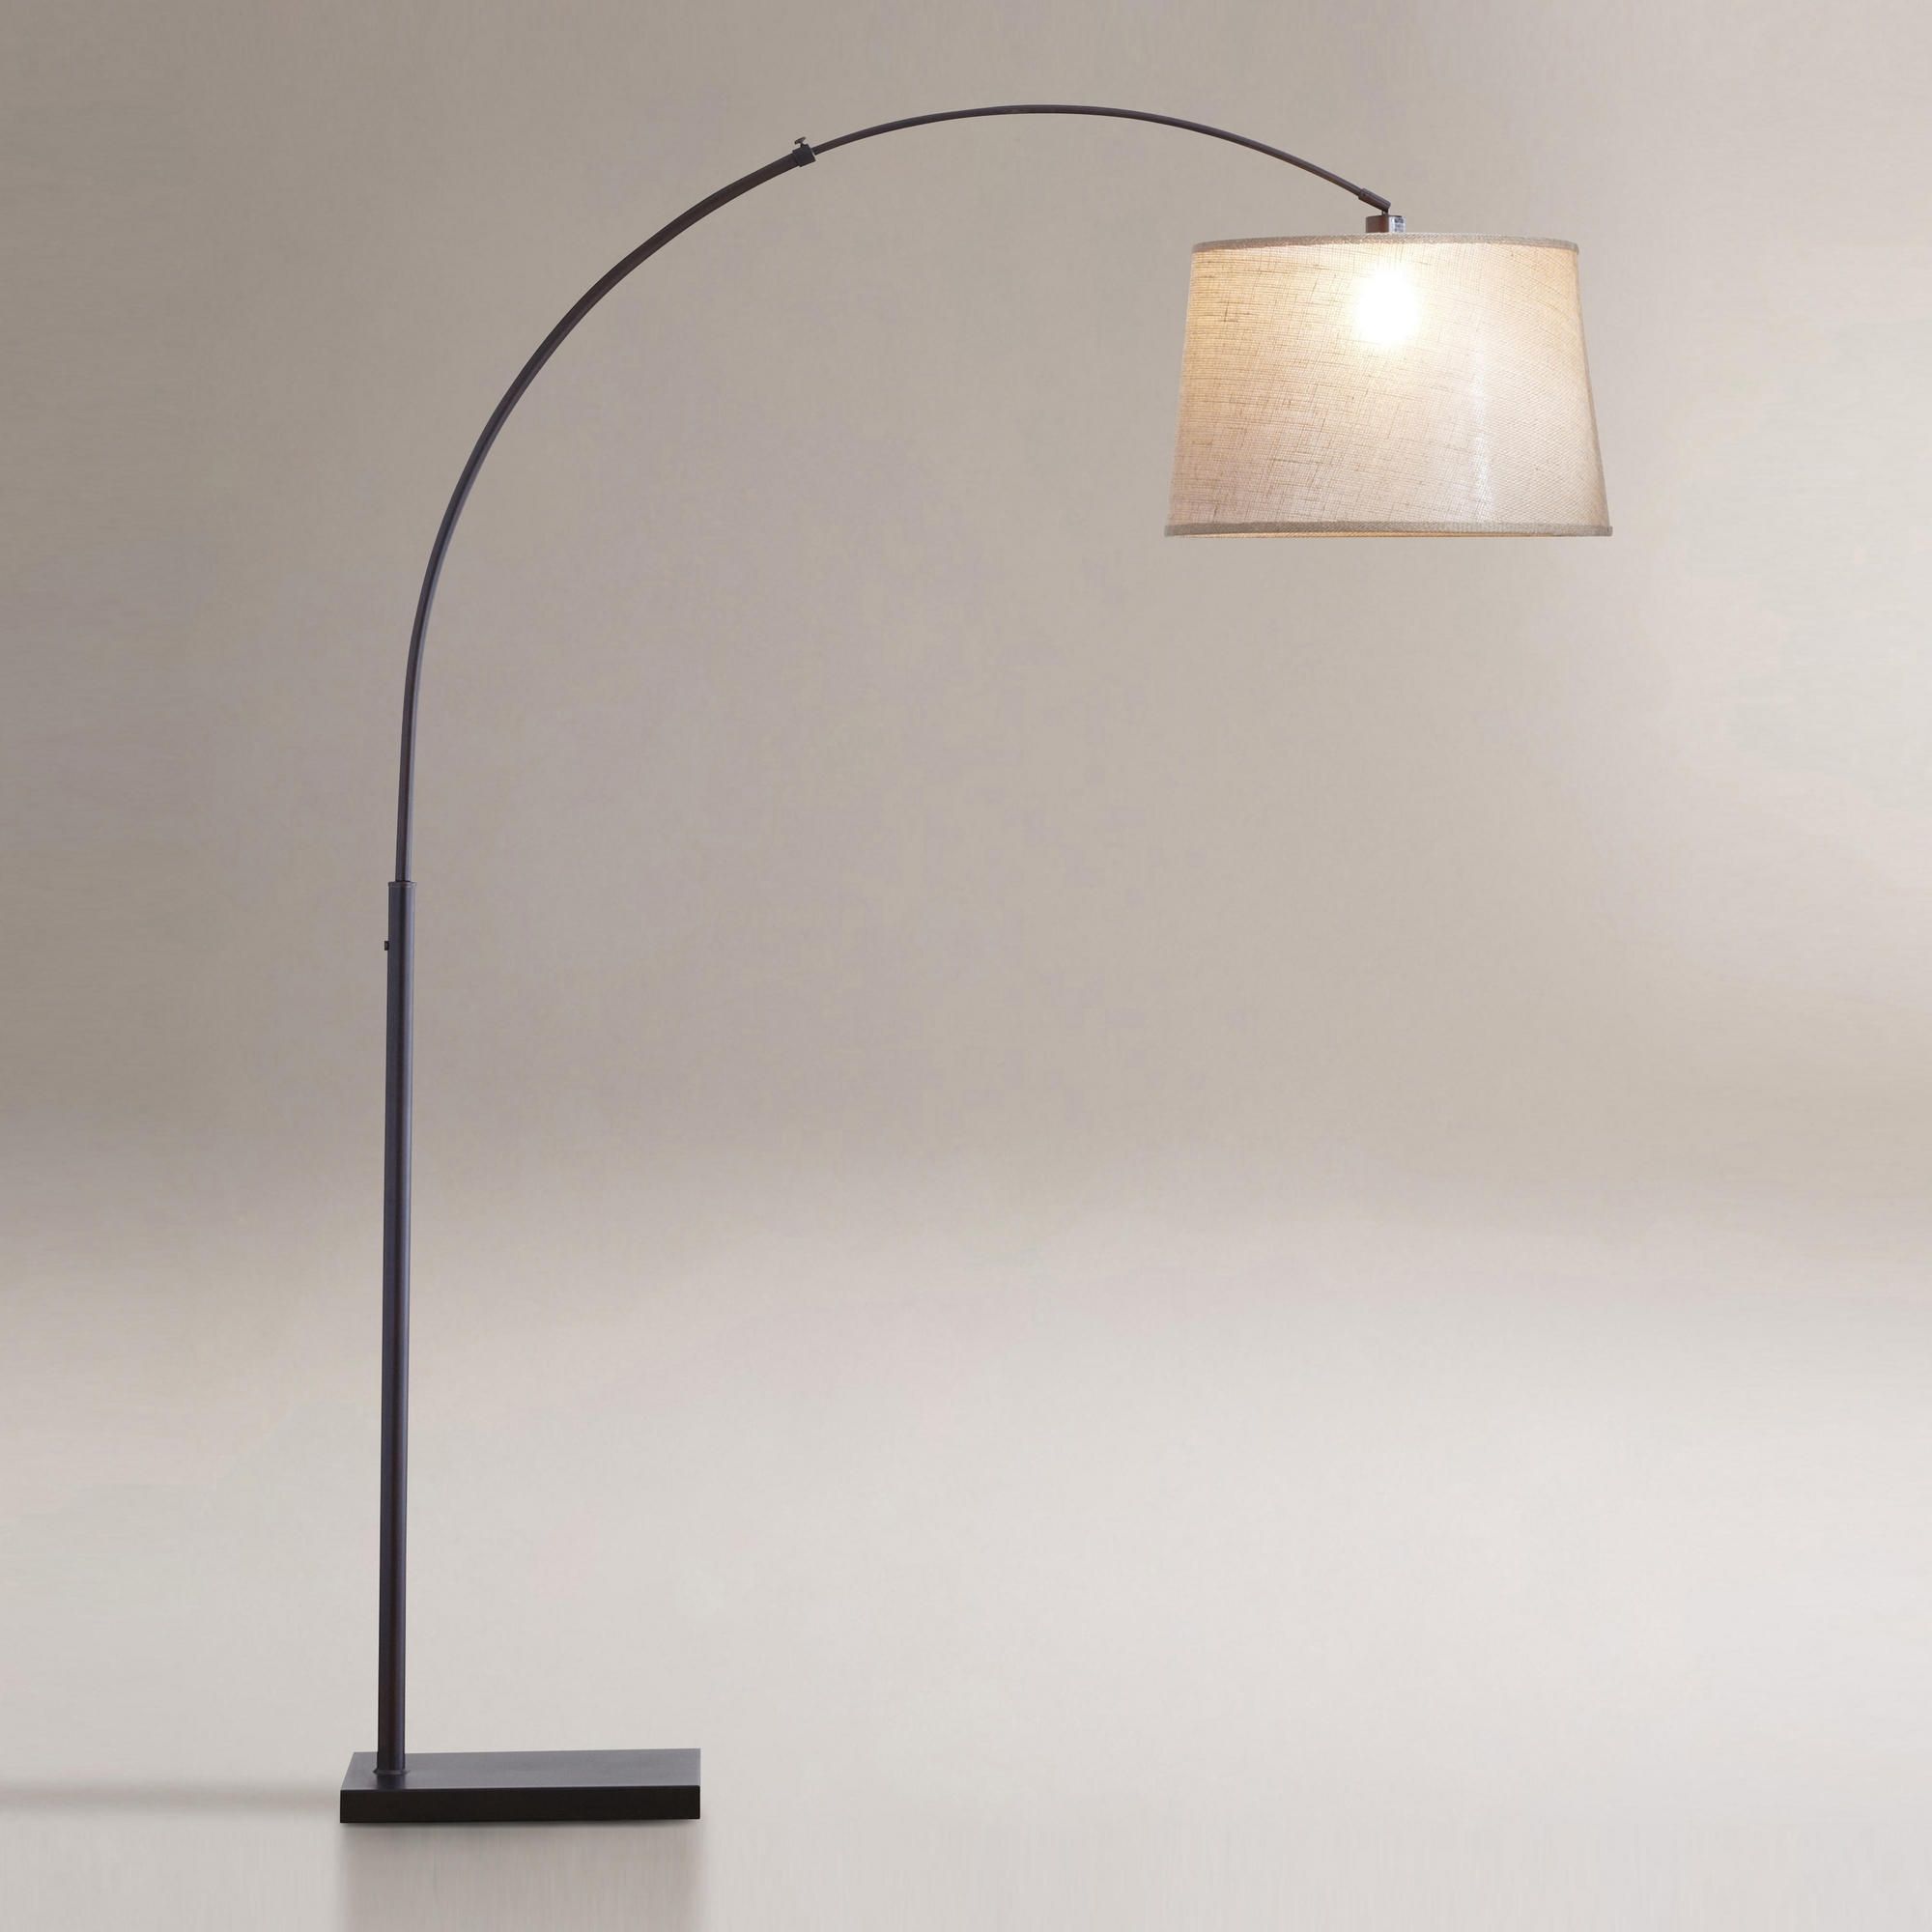 2018 Living Room : Chandelier Floor Lamp Amazon Carpet Diy Floor Lamp With Free Standing Chandelier Lamps (View 14 of 15)